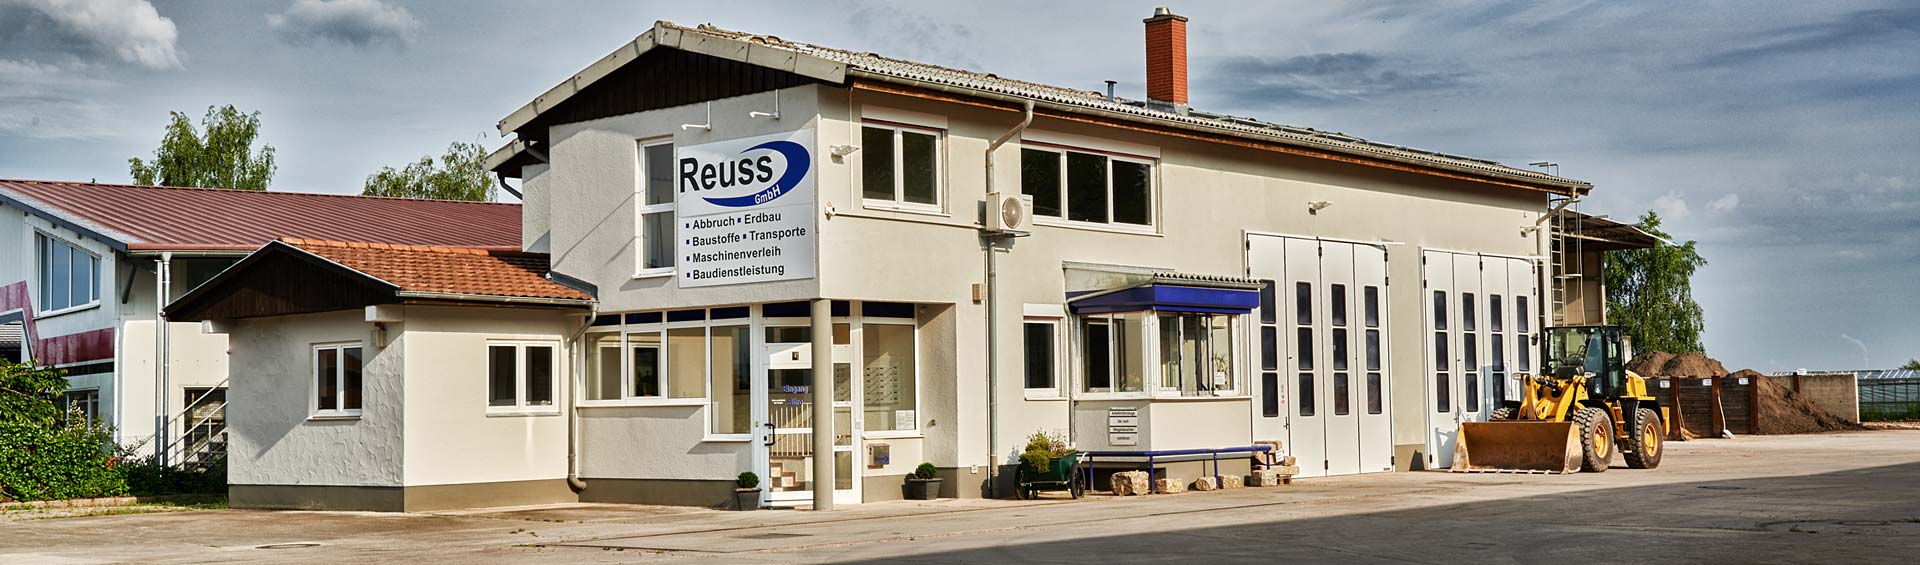 Anfahrt zur Reuss GmbH